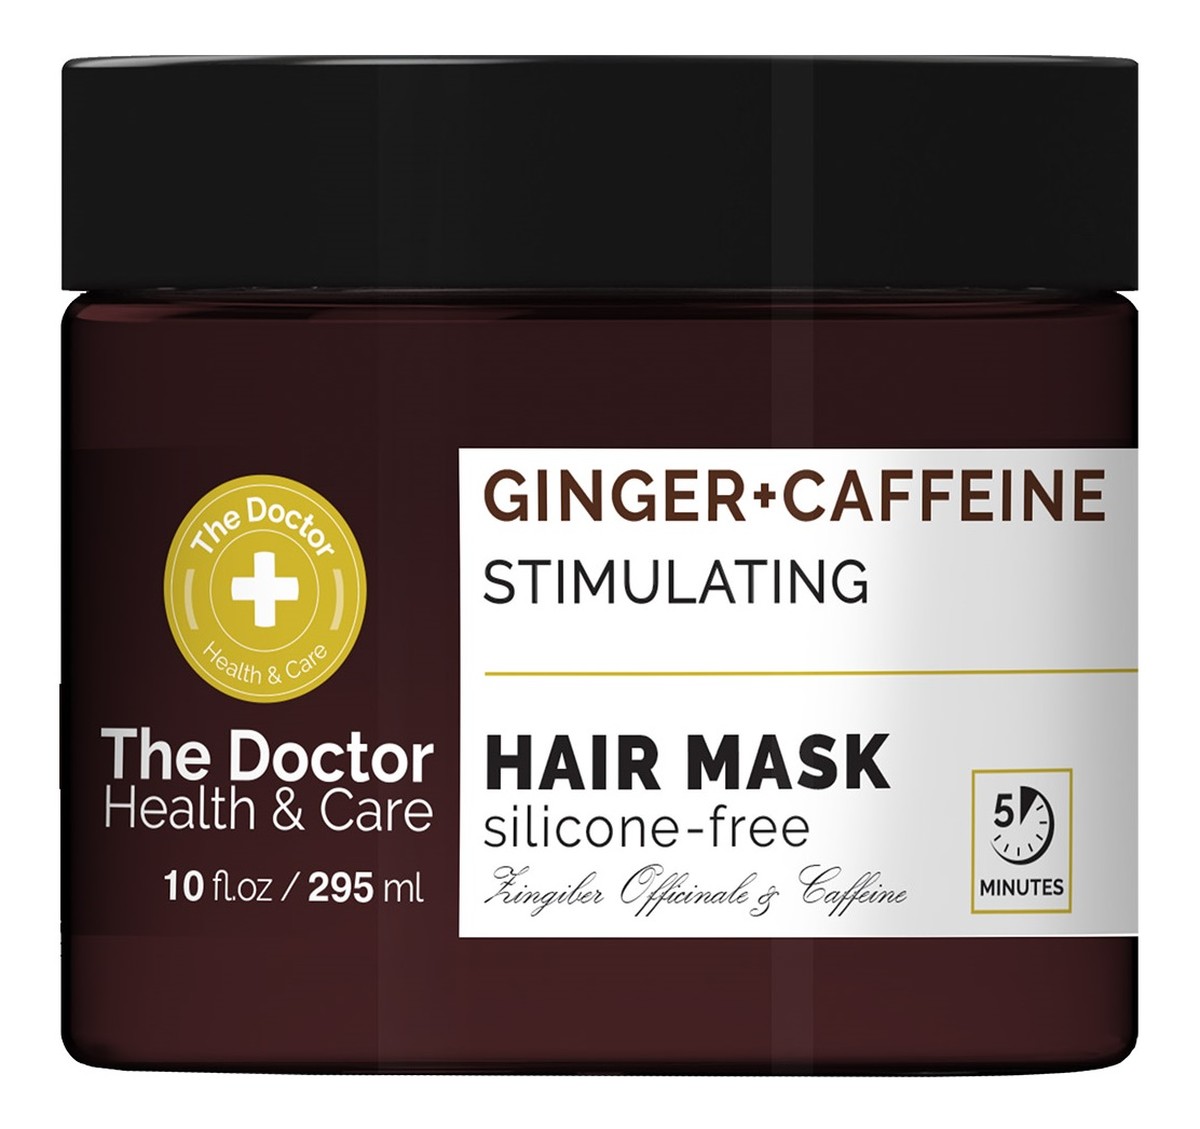 Health & care maska do włosów stymulująca cebulki imbir + kofeina